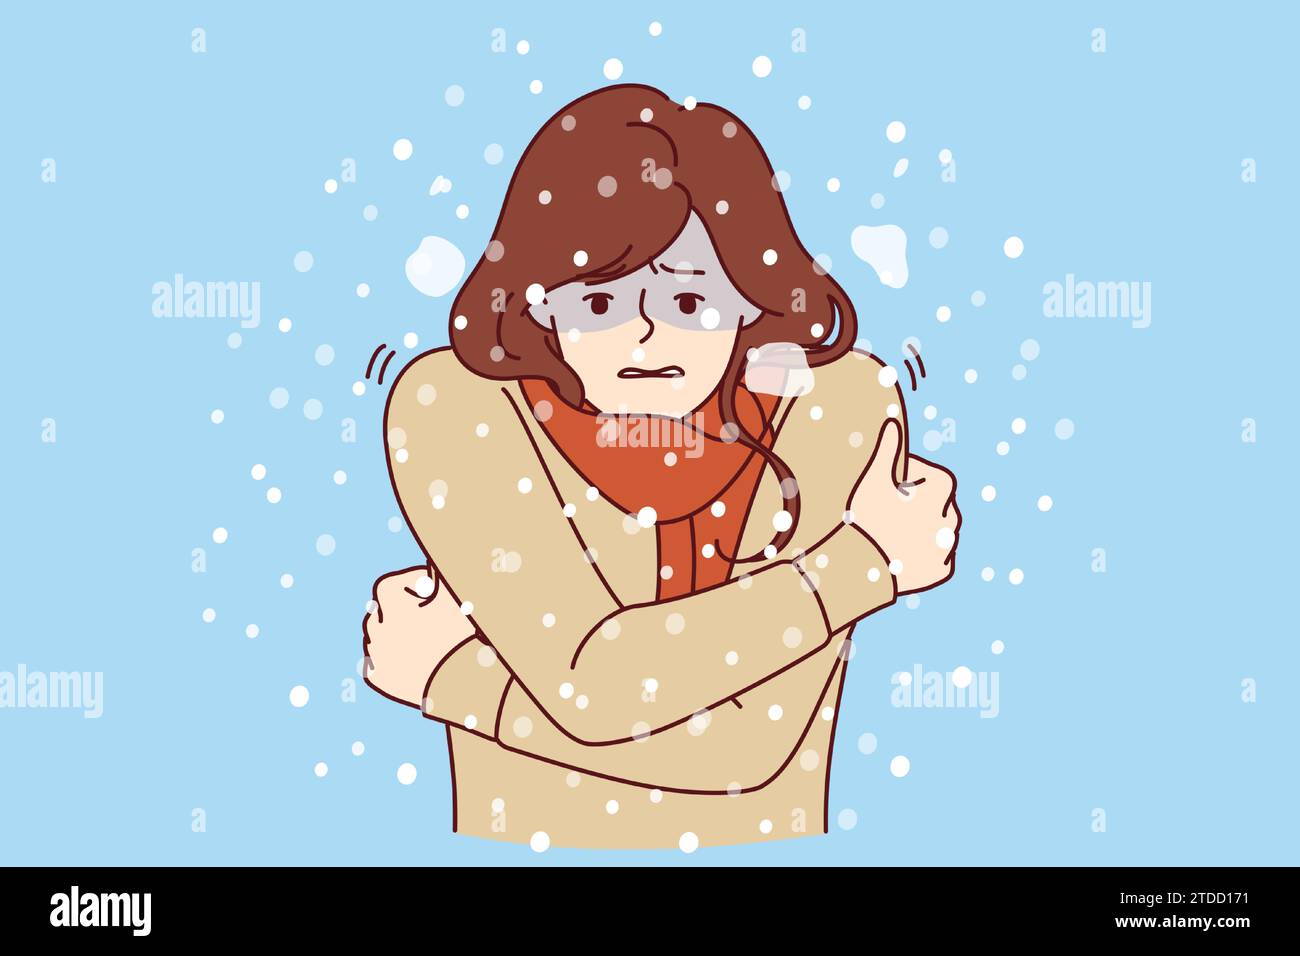 Die Frau friert im kalten Winter unter Schnee, trägt einen Pullover und braucht eine warme Daunenjacke oder Regenjacke. Das Mädchen friert aufgrund fehlender Oberbekleidung und riskiert Erkältung und Grippe zu fangen Stock Vektor